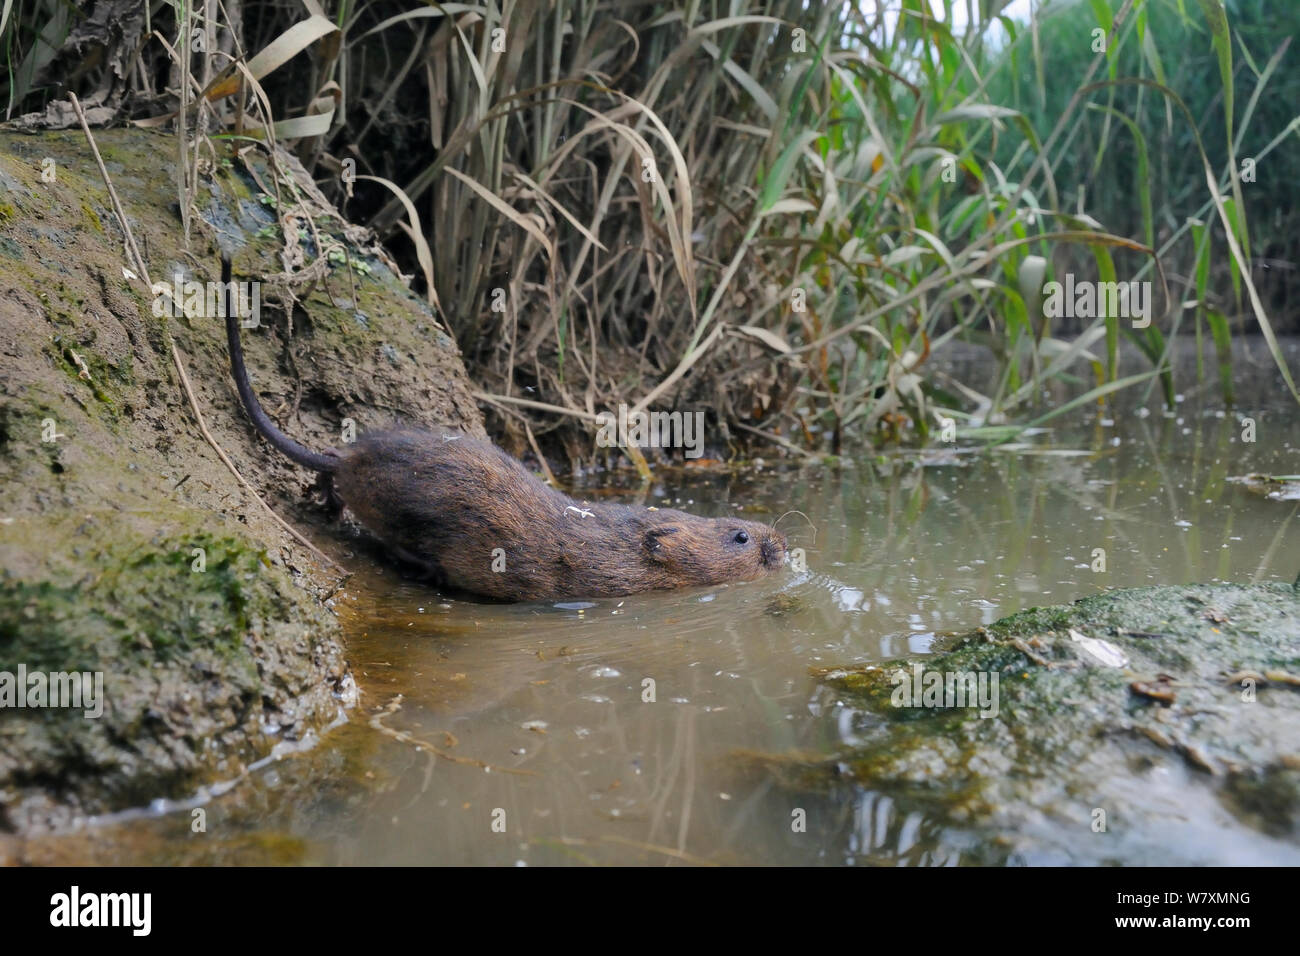 Le campagnol d'eau élevés en captivité (Arvicola amphibius) entrant dans l'eau après la mise en liberté sur les bords de la rivière lors de la réintroduction, près de Bude, Cornwall, UK, juin. Banque D'Images